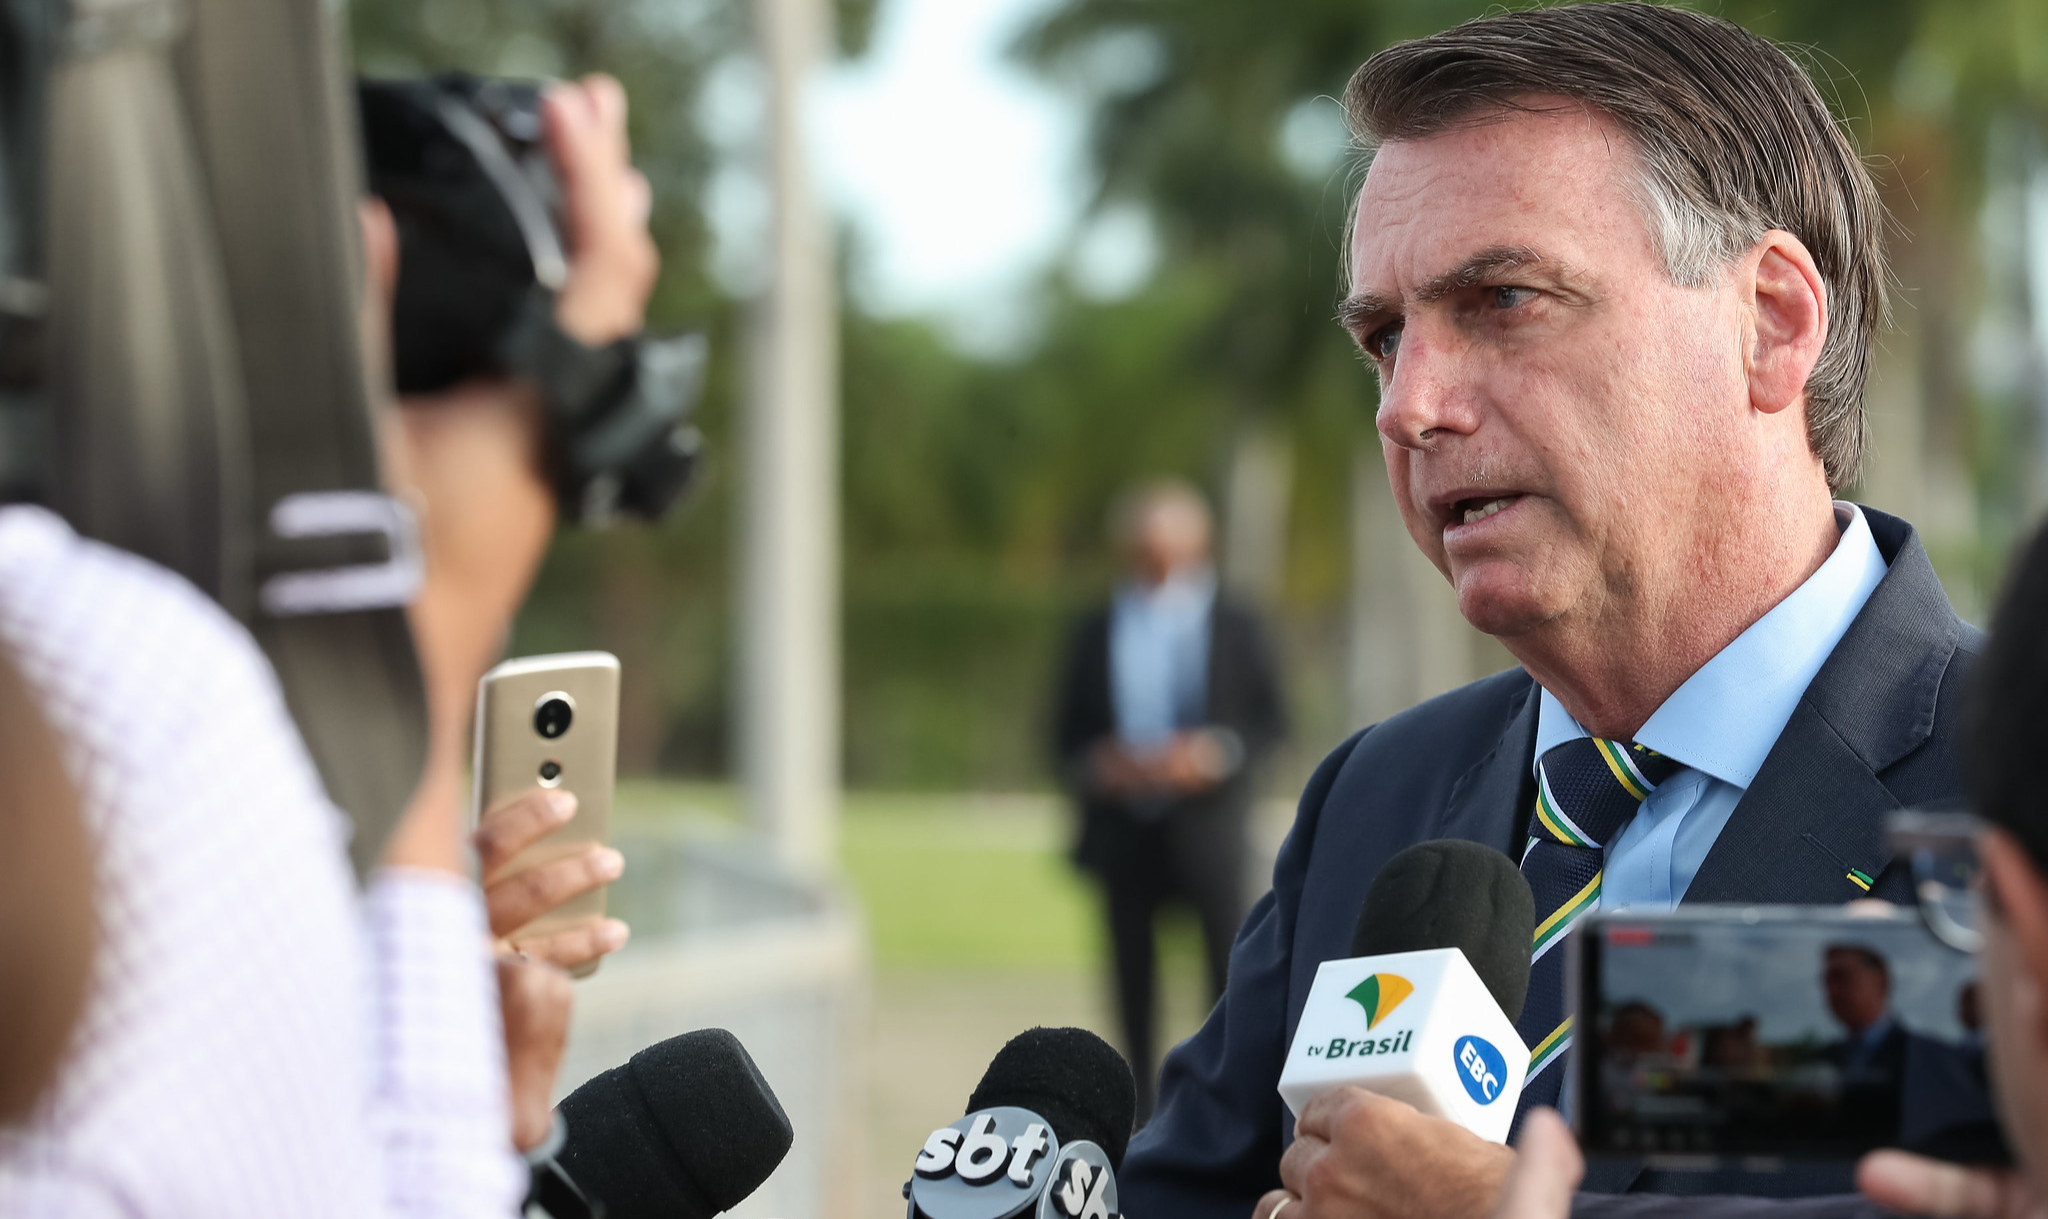 'Queria dar o furo...', disse presidente em conversa com jornalistas em Brasília; Patrícia Campos Mello investiga disparos em massa pelo WhatsApp durante eleições de 2018